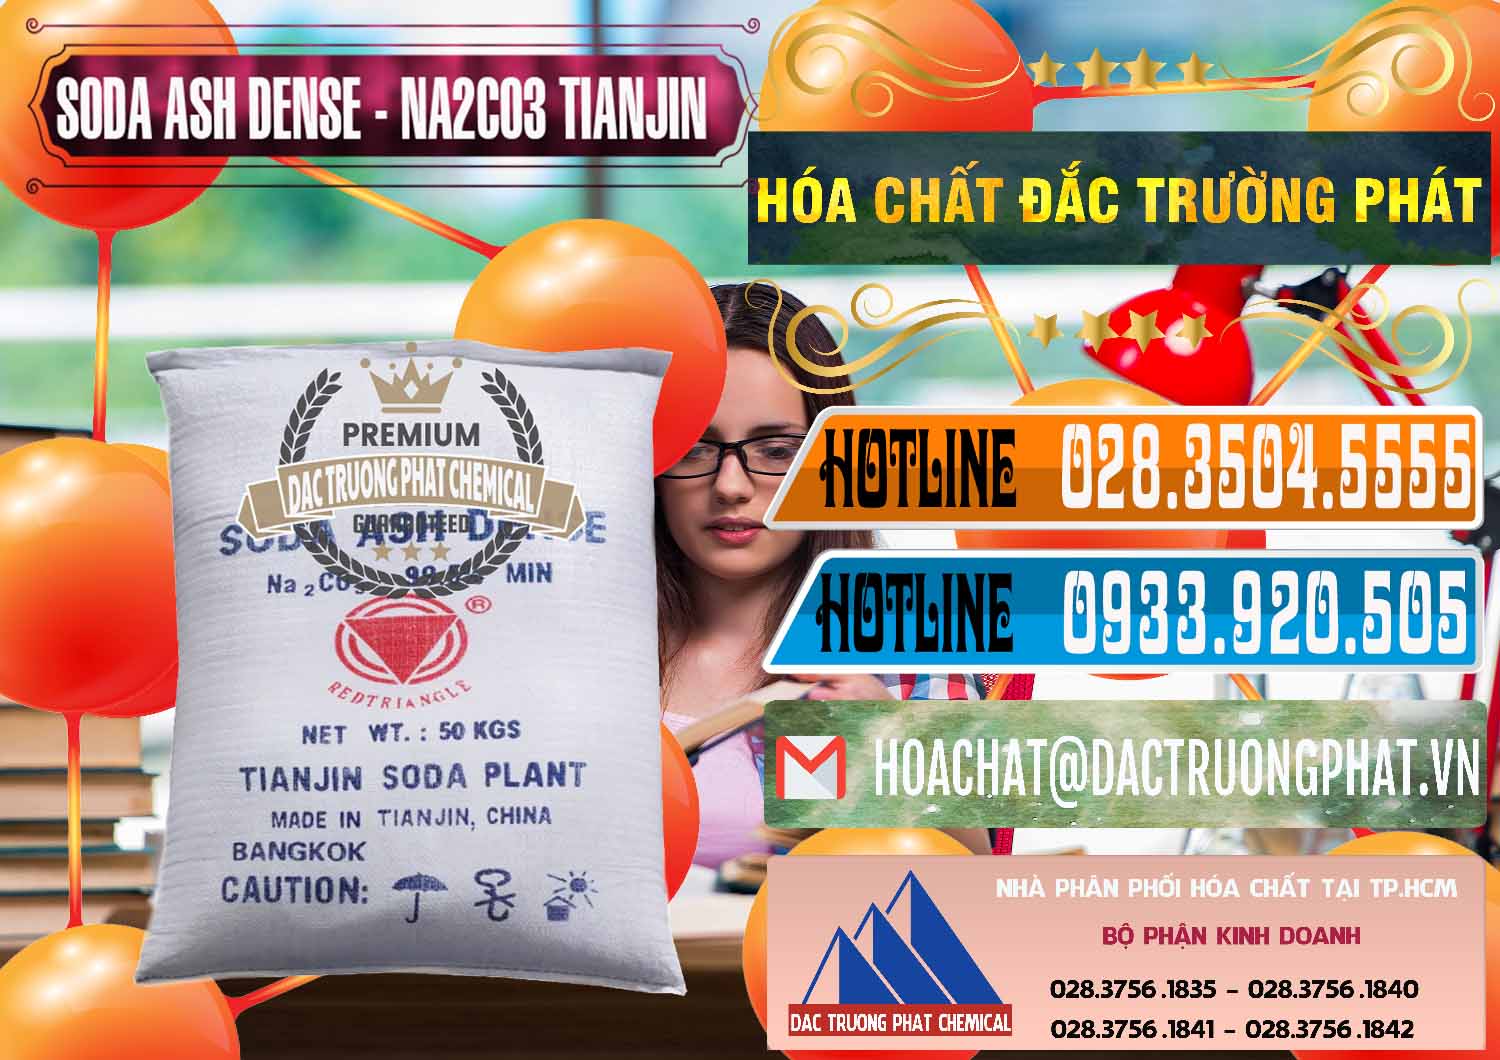 Cty chuyên bán và phân phối Soda Ash Dense - NA2CO3 Tianjin Trung Quốc China - 0336 - Công ty kinh doanh ( phân phối ) hóa chất tại TP.HCM - stmp.net